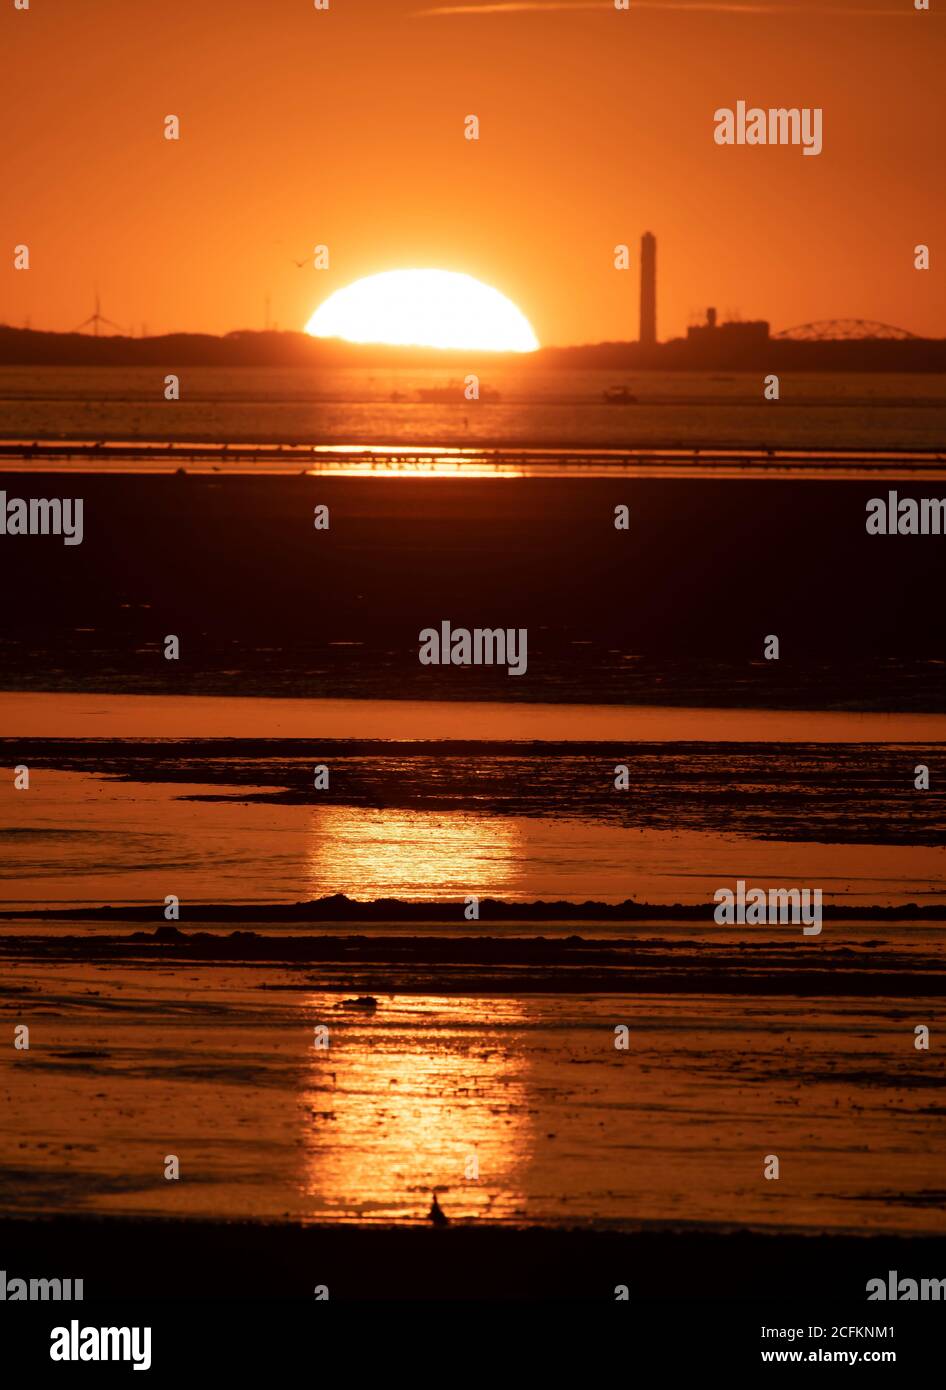 Le soleil se couche derrière une centrale électrique sur Cape Cod, un soir d'été. Banque D'Images